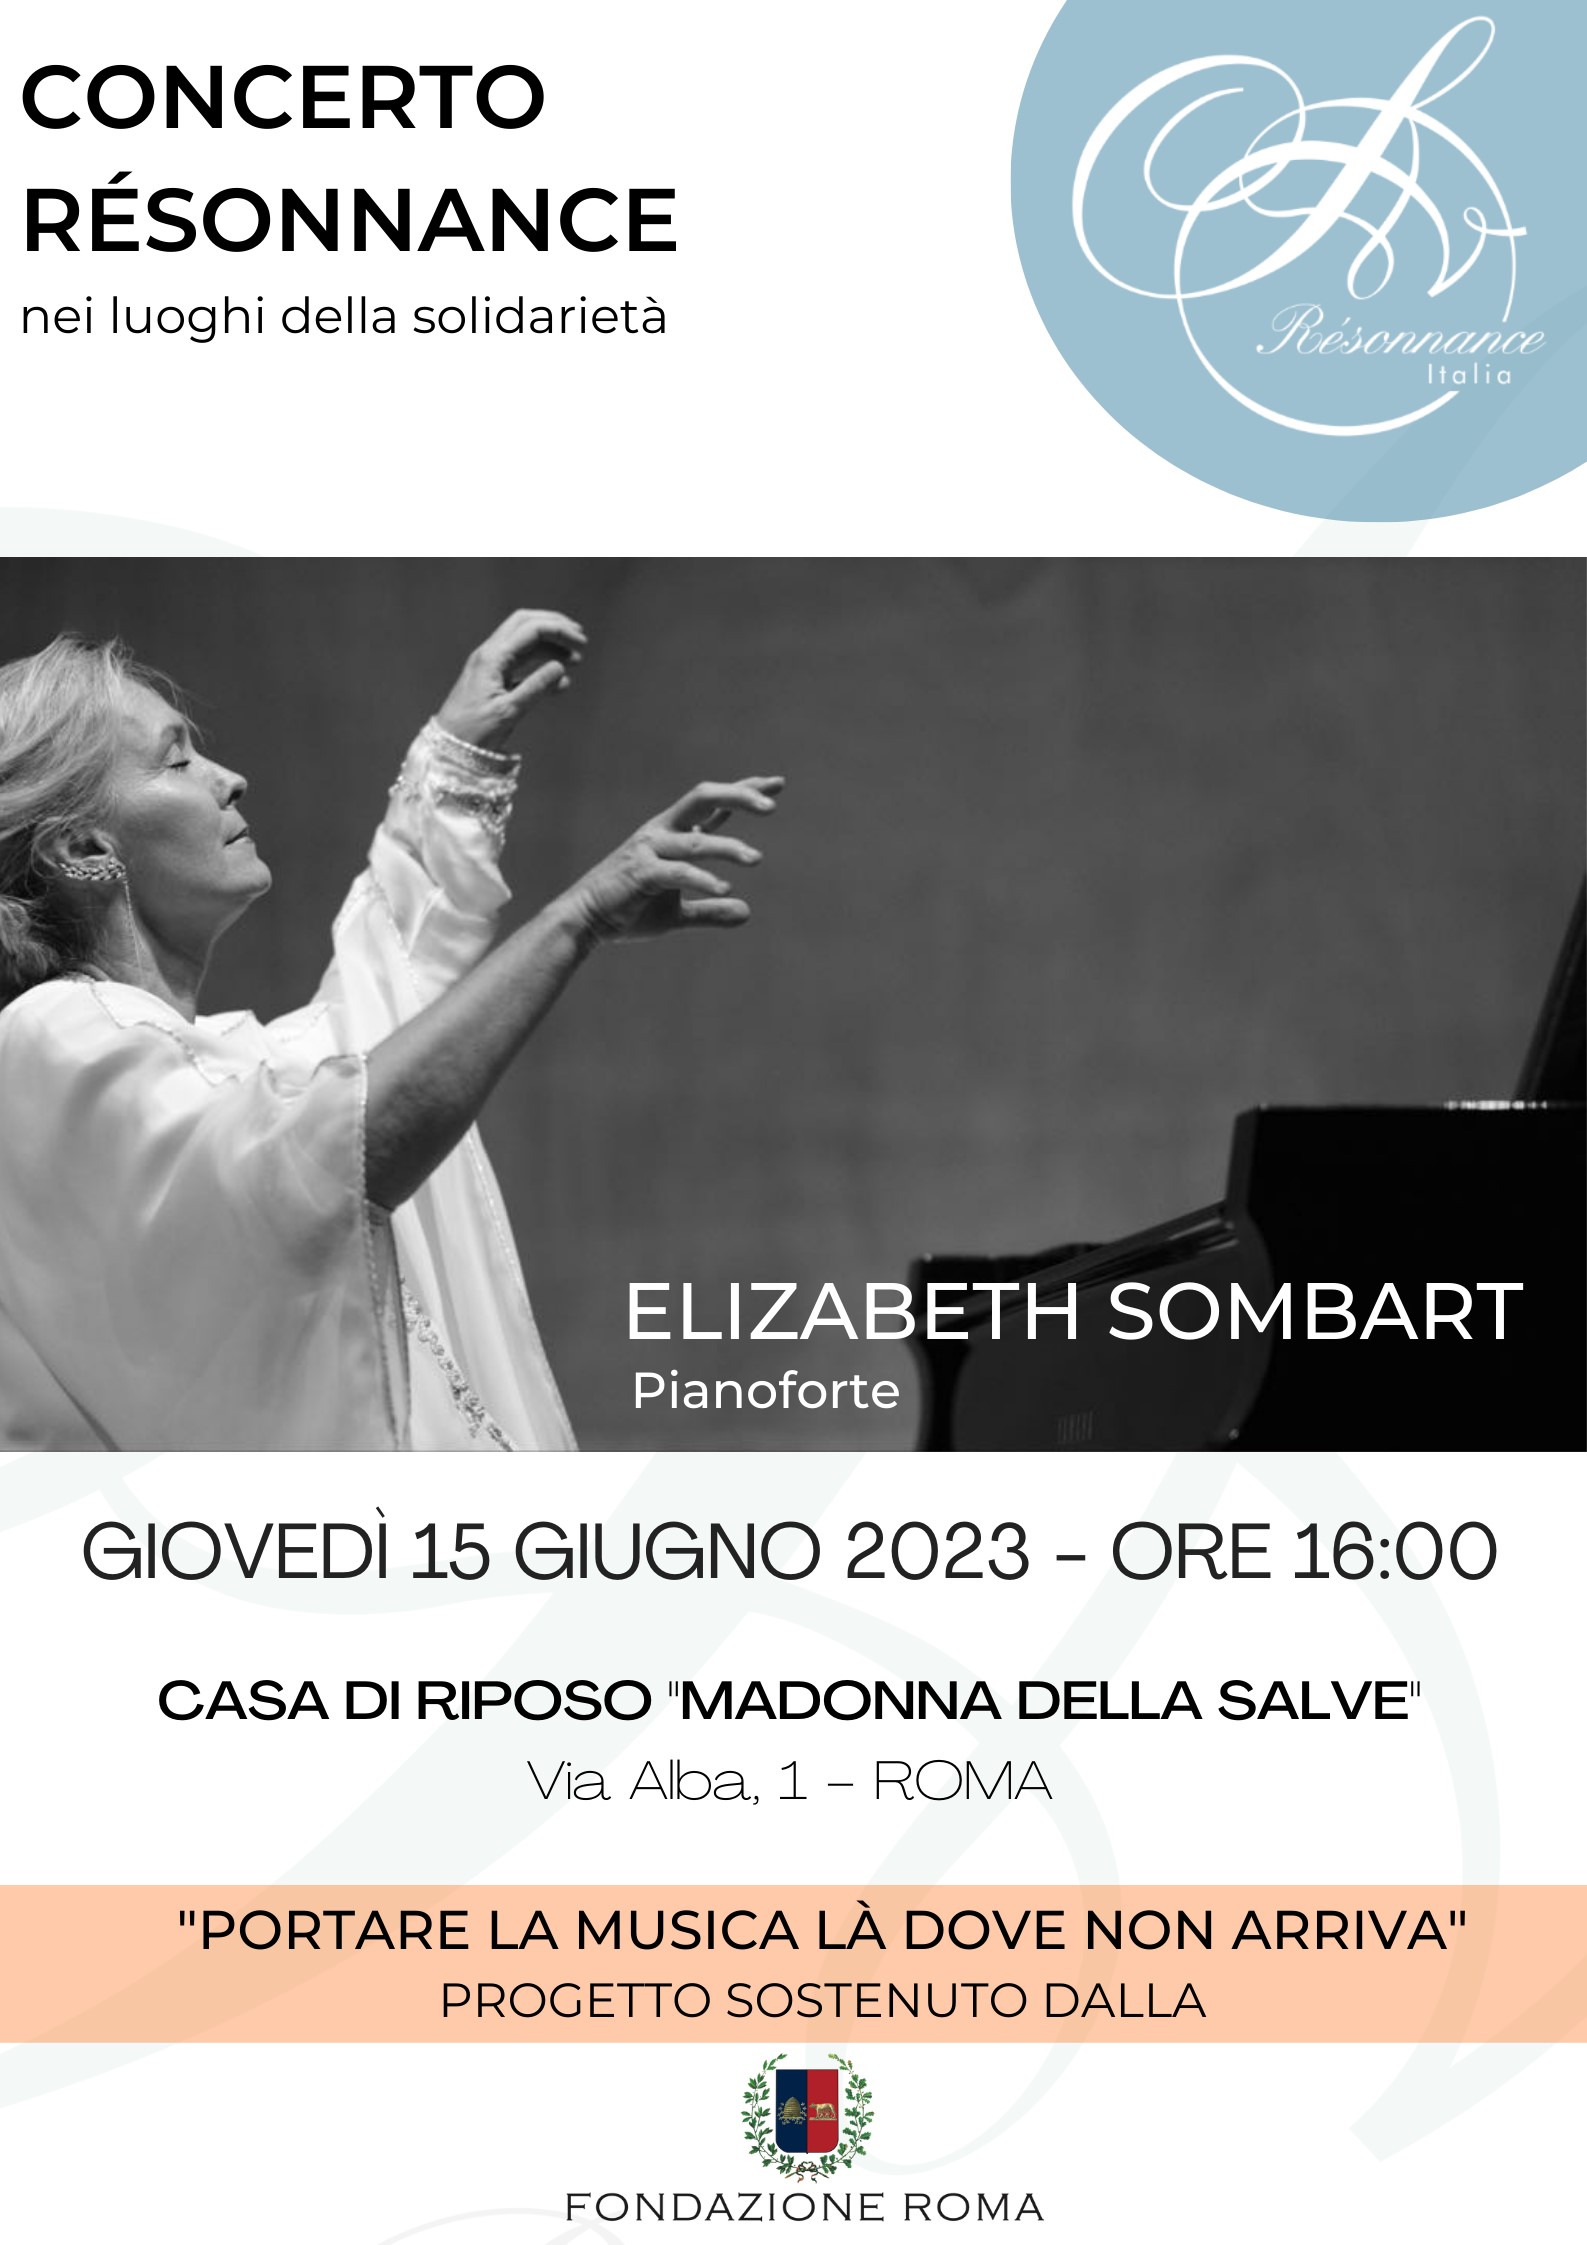 Concert avec Elizabeth Sombart